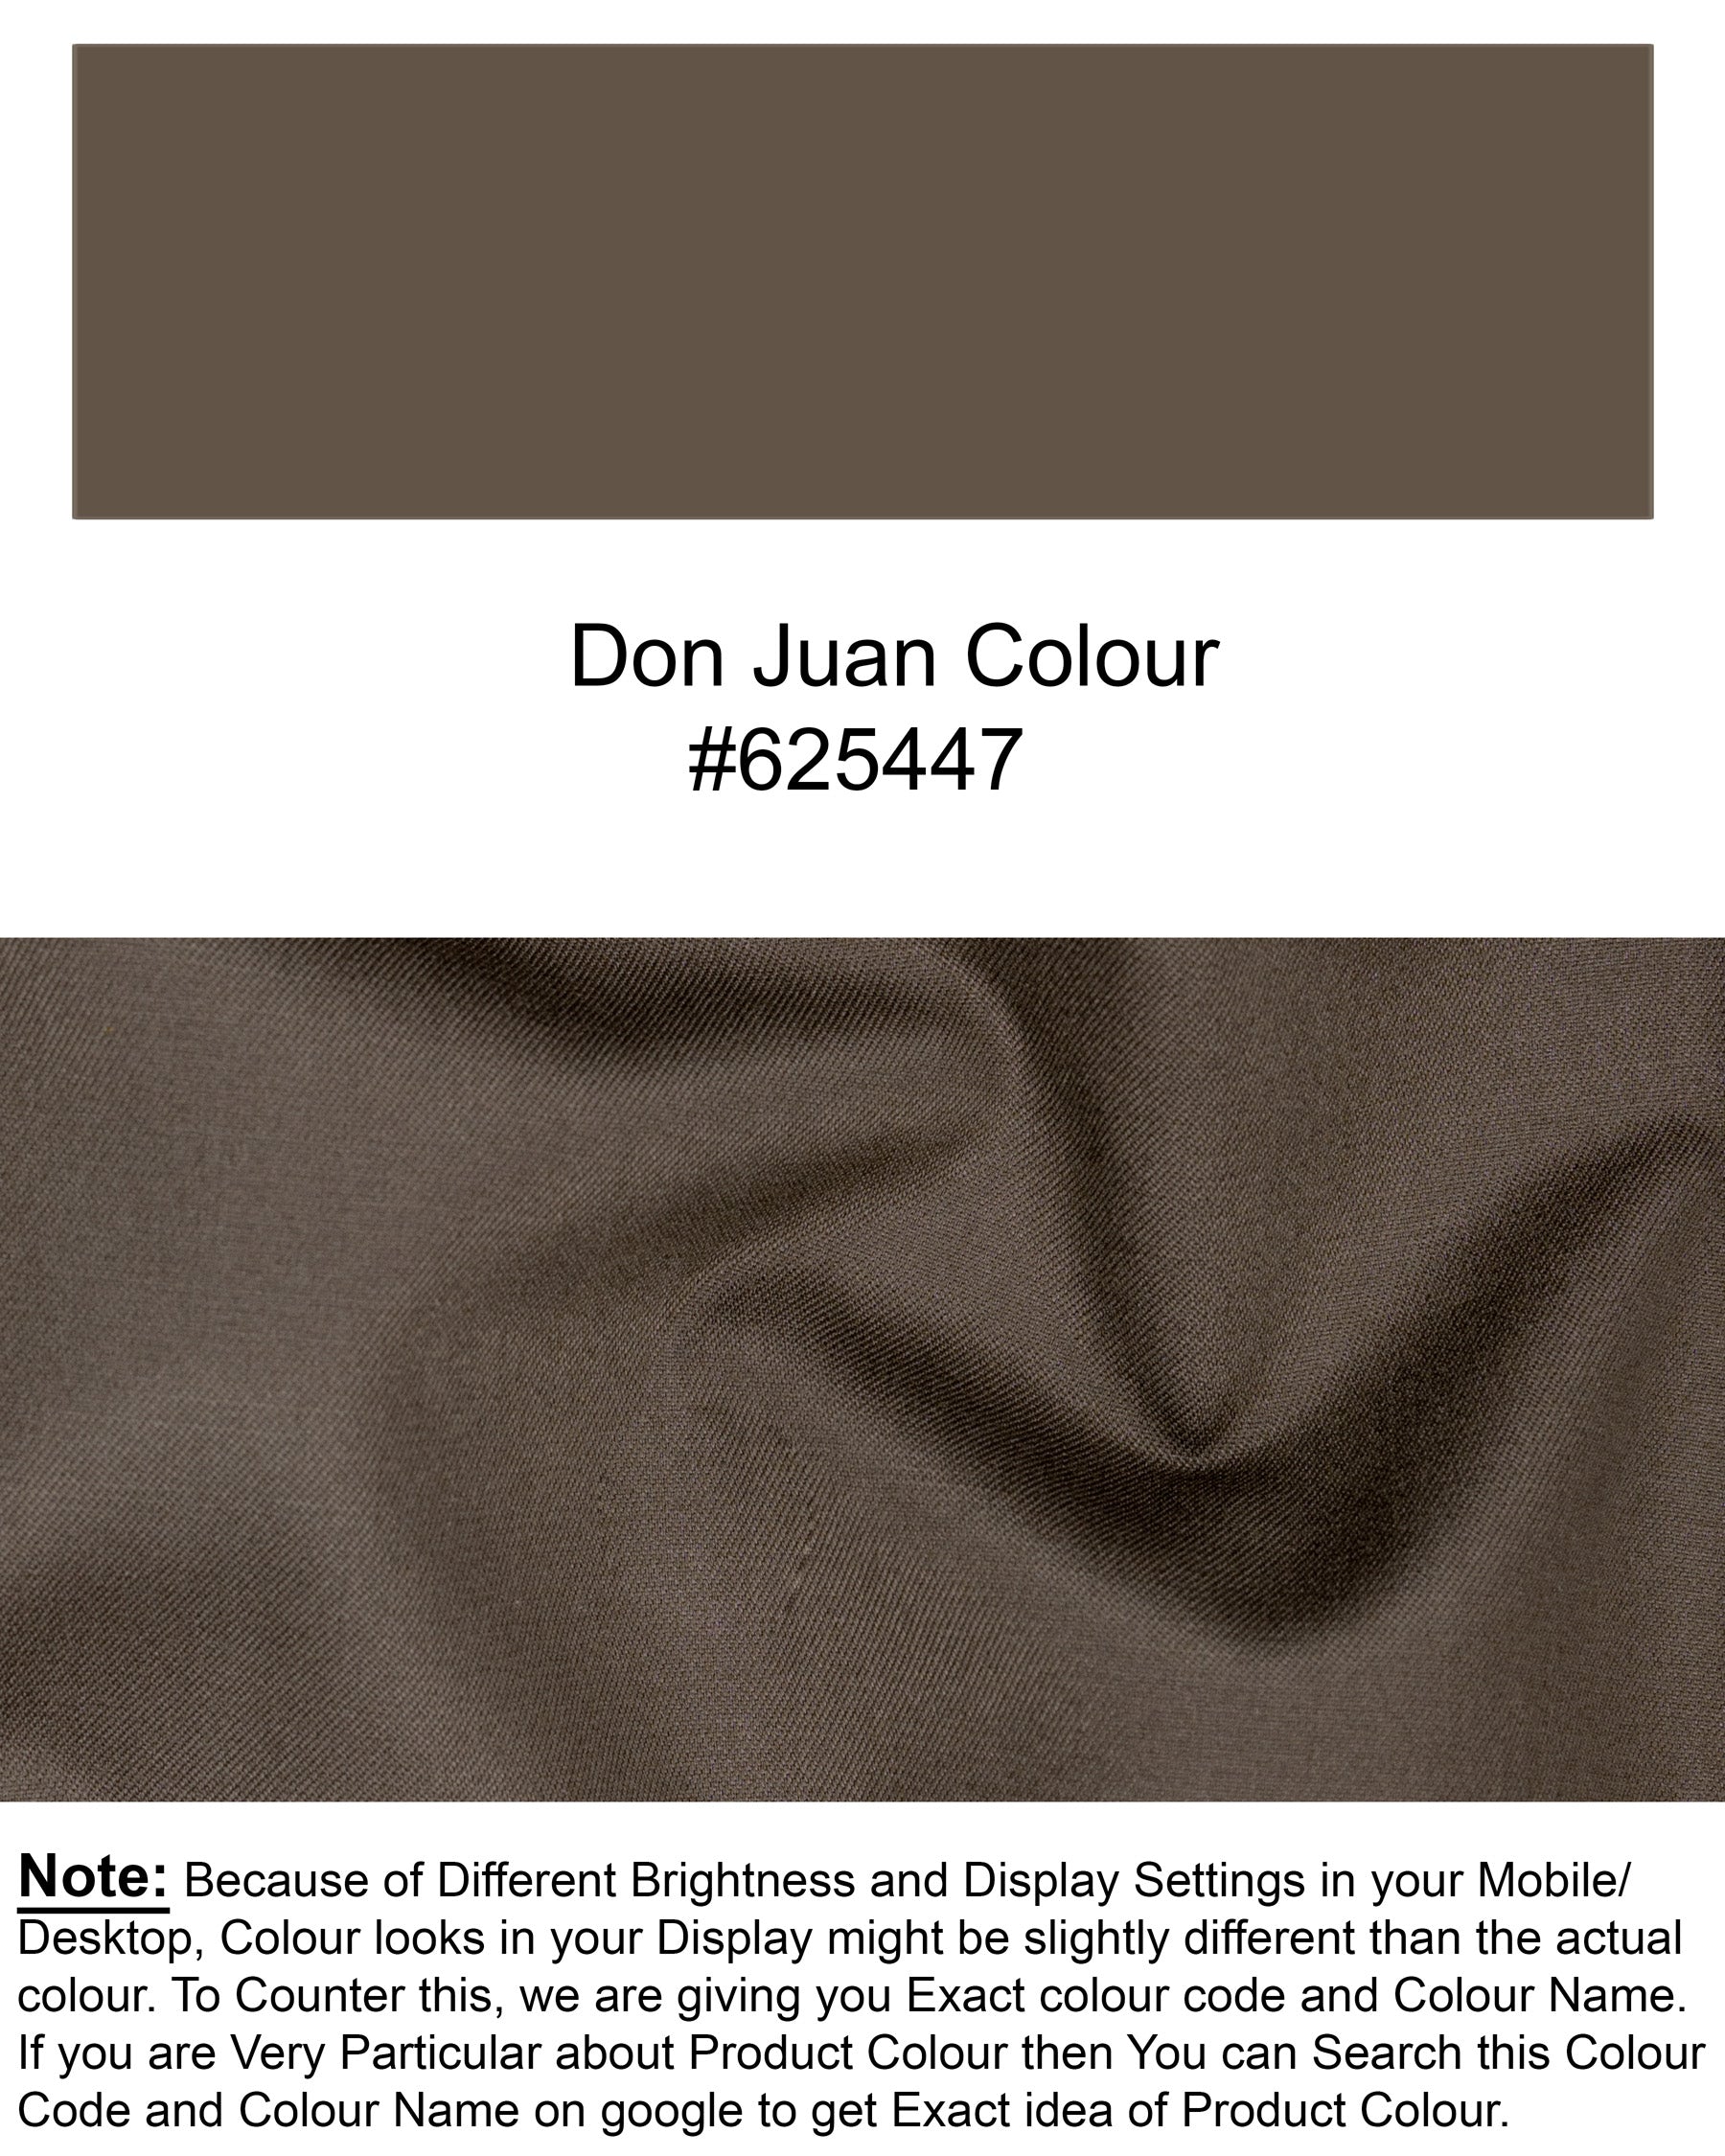 Don Juan Brown Wool Rich Suit ST1496-SB-36, ST1496-SB-38, ST1496-SB-40, ST1496-SB-42, ST1496-SB-44, ST1496-SB-46, ST1496-SB-48, ST1496-SB-50, ST1496-SB-52, ST1496-SB-54, ST1496-SB-56, ST1496-SB-58, ST1496-SB-60